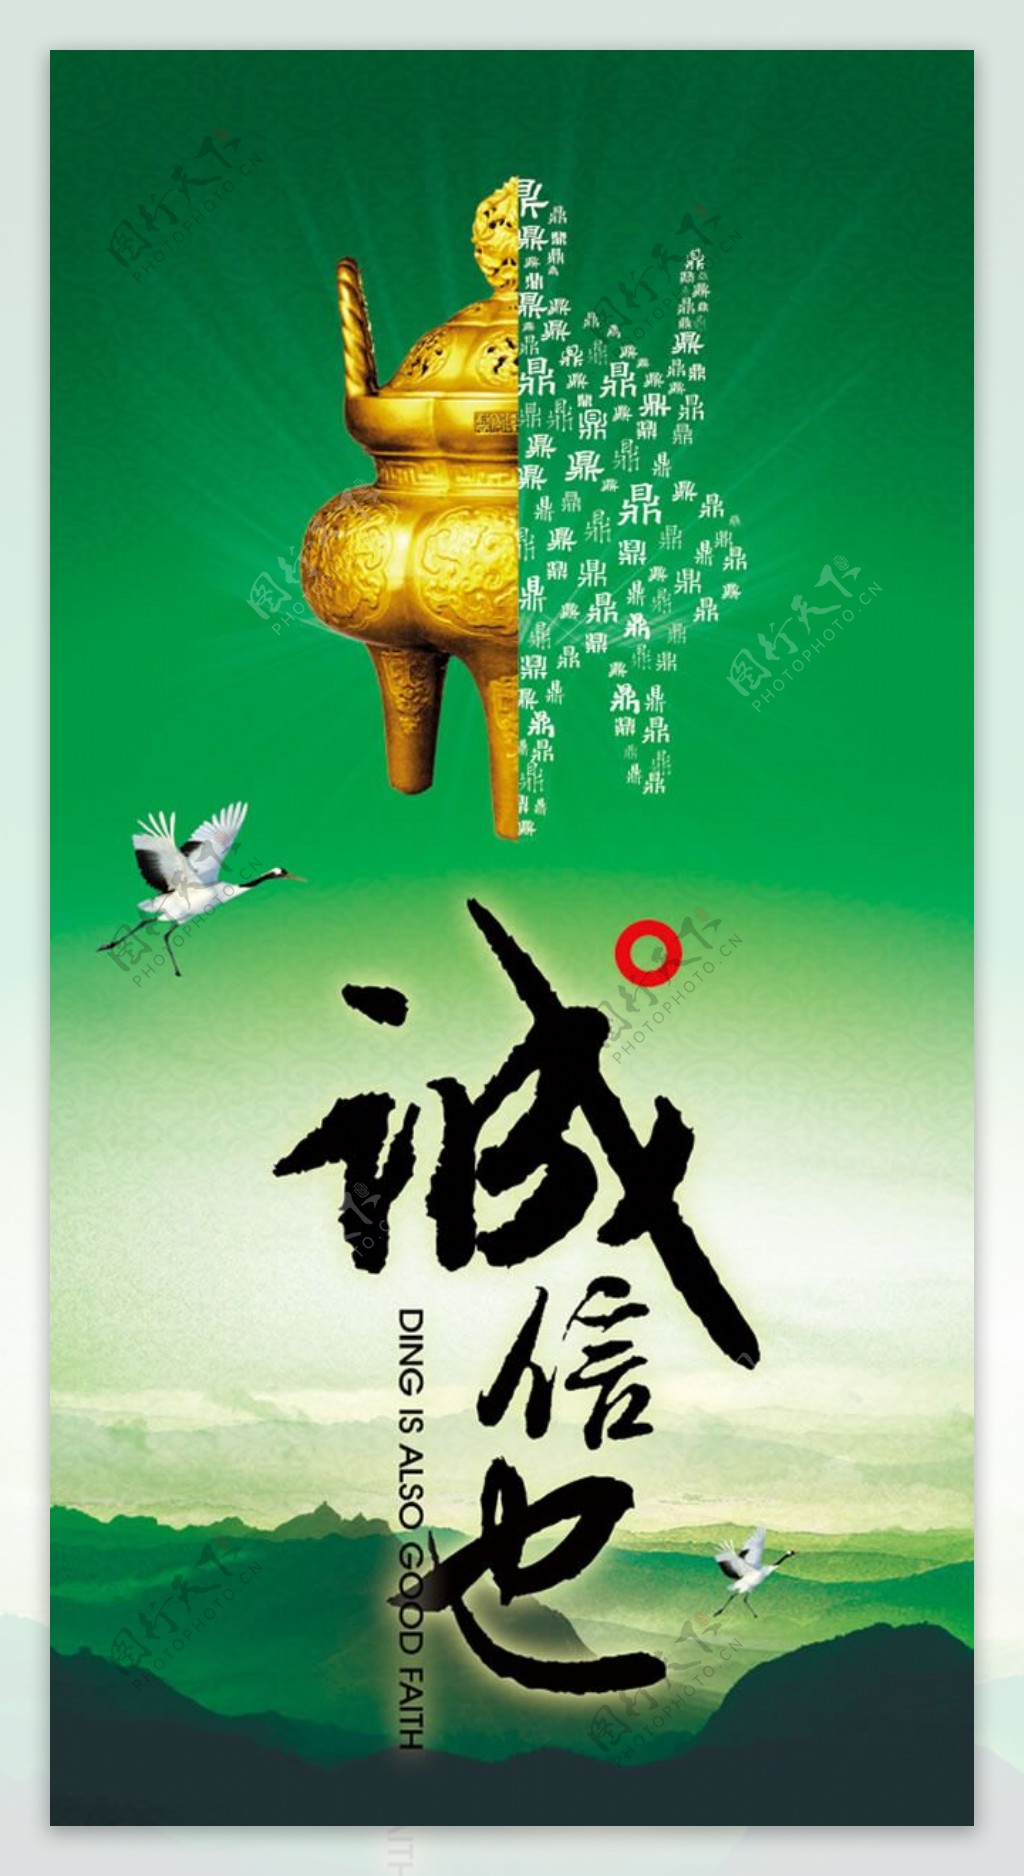 中国风诚信主题海报设计PSD素材